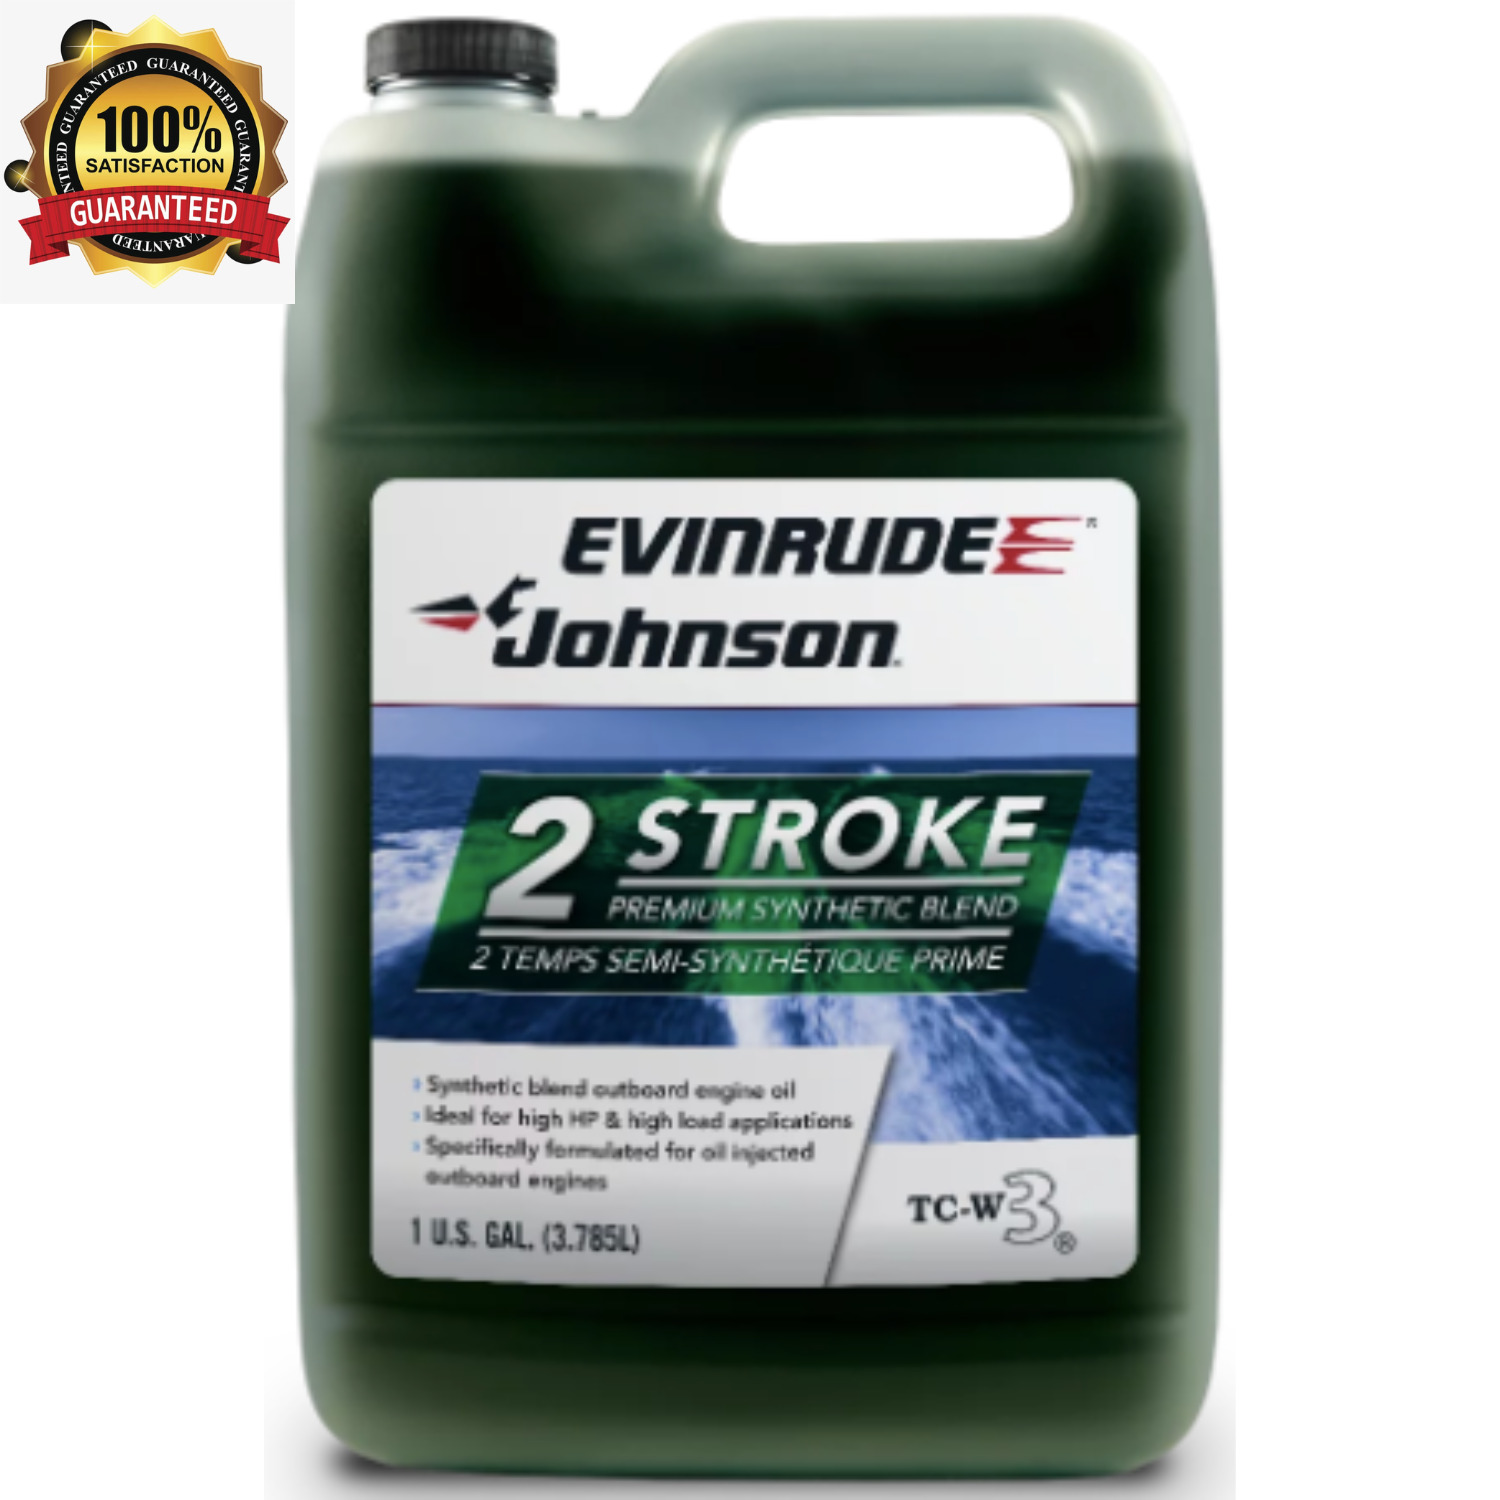 Evinrude Johnson TC-W3, 2 stroke premium synthetic Marine engine Oil, 1 Gallon